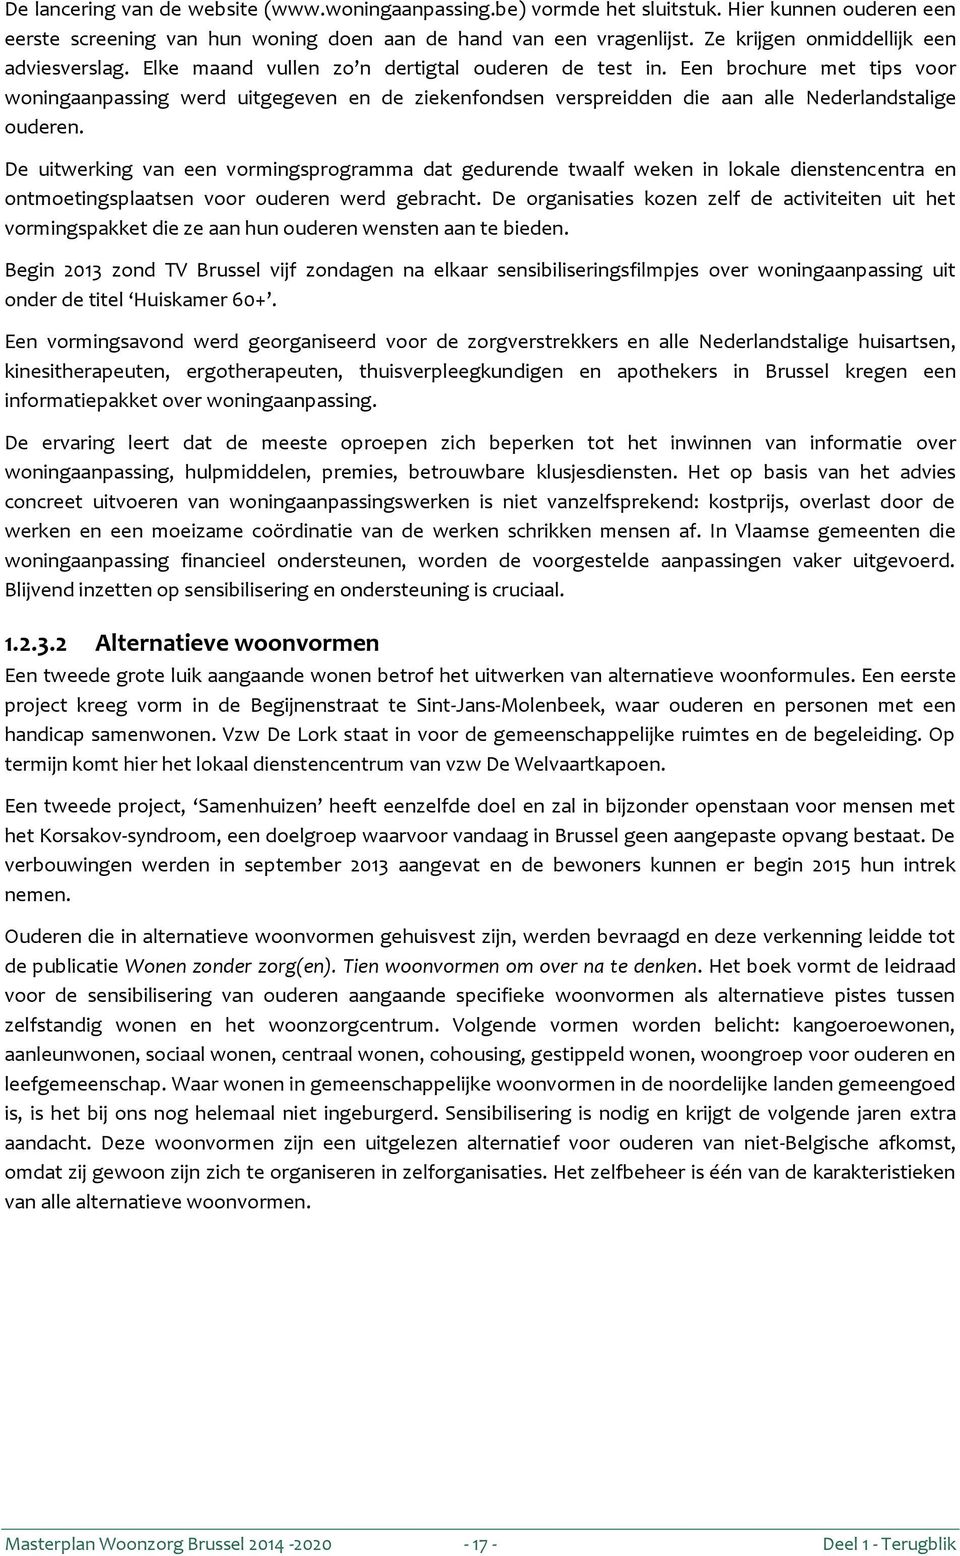 Een brochure met tips voor woningaanpassing werd uitgegeven en de ziekenfondsen verspreidden die aan alle Nederlandstalige ouderen.